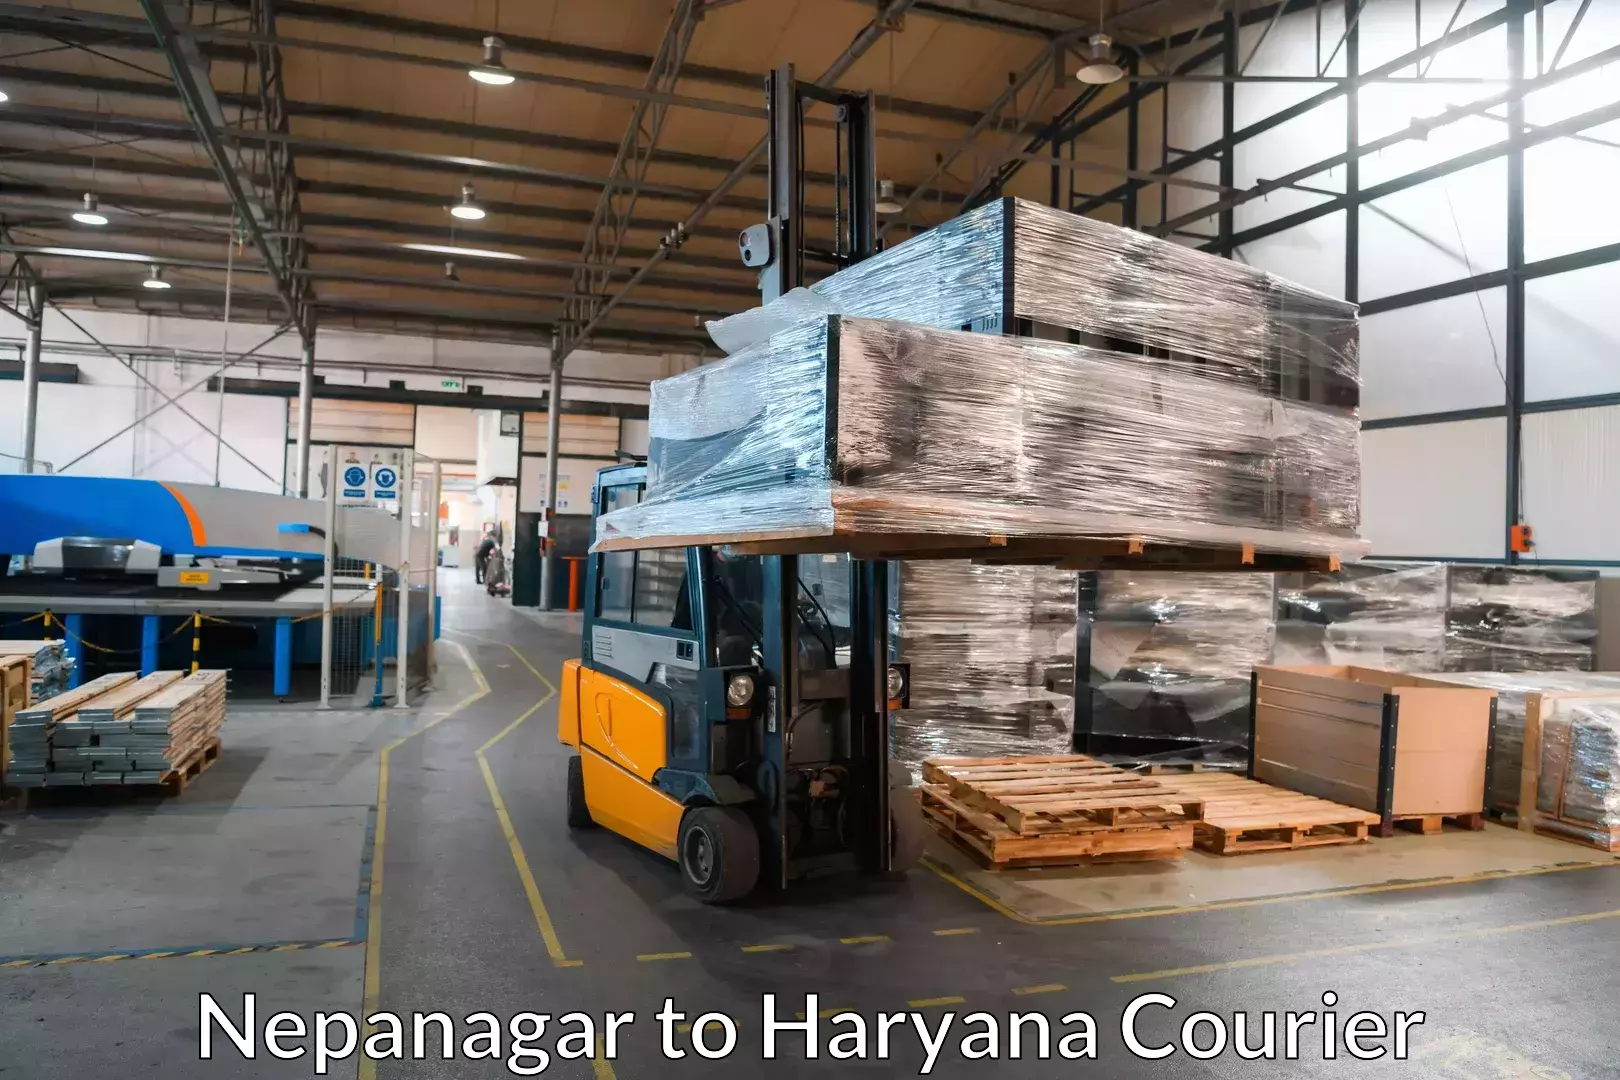 Reliable movers Nepanagar to Haryana